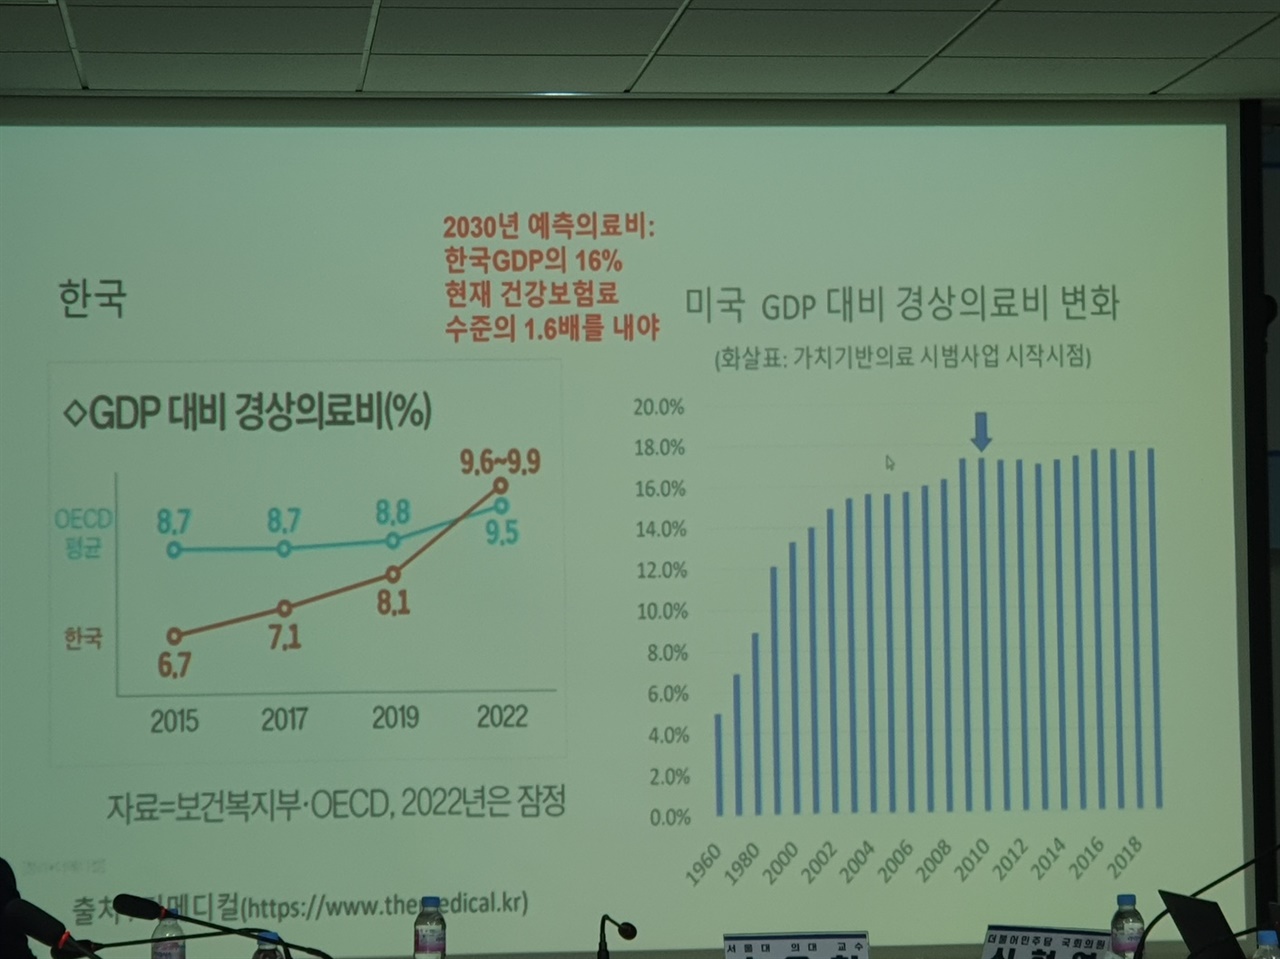 한국과 미국의 GDP대비 경상의료비 추이 비교